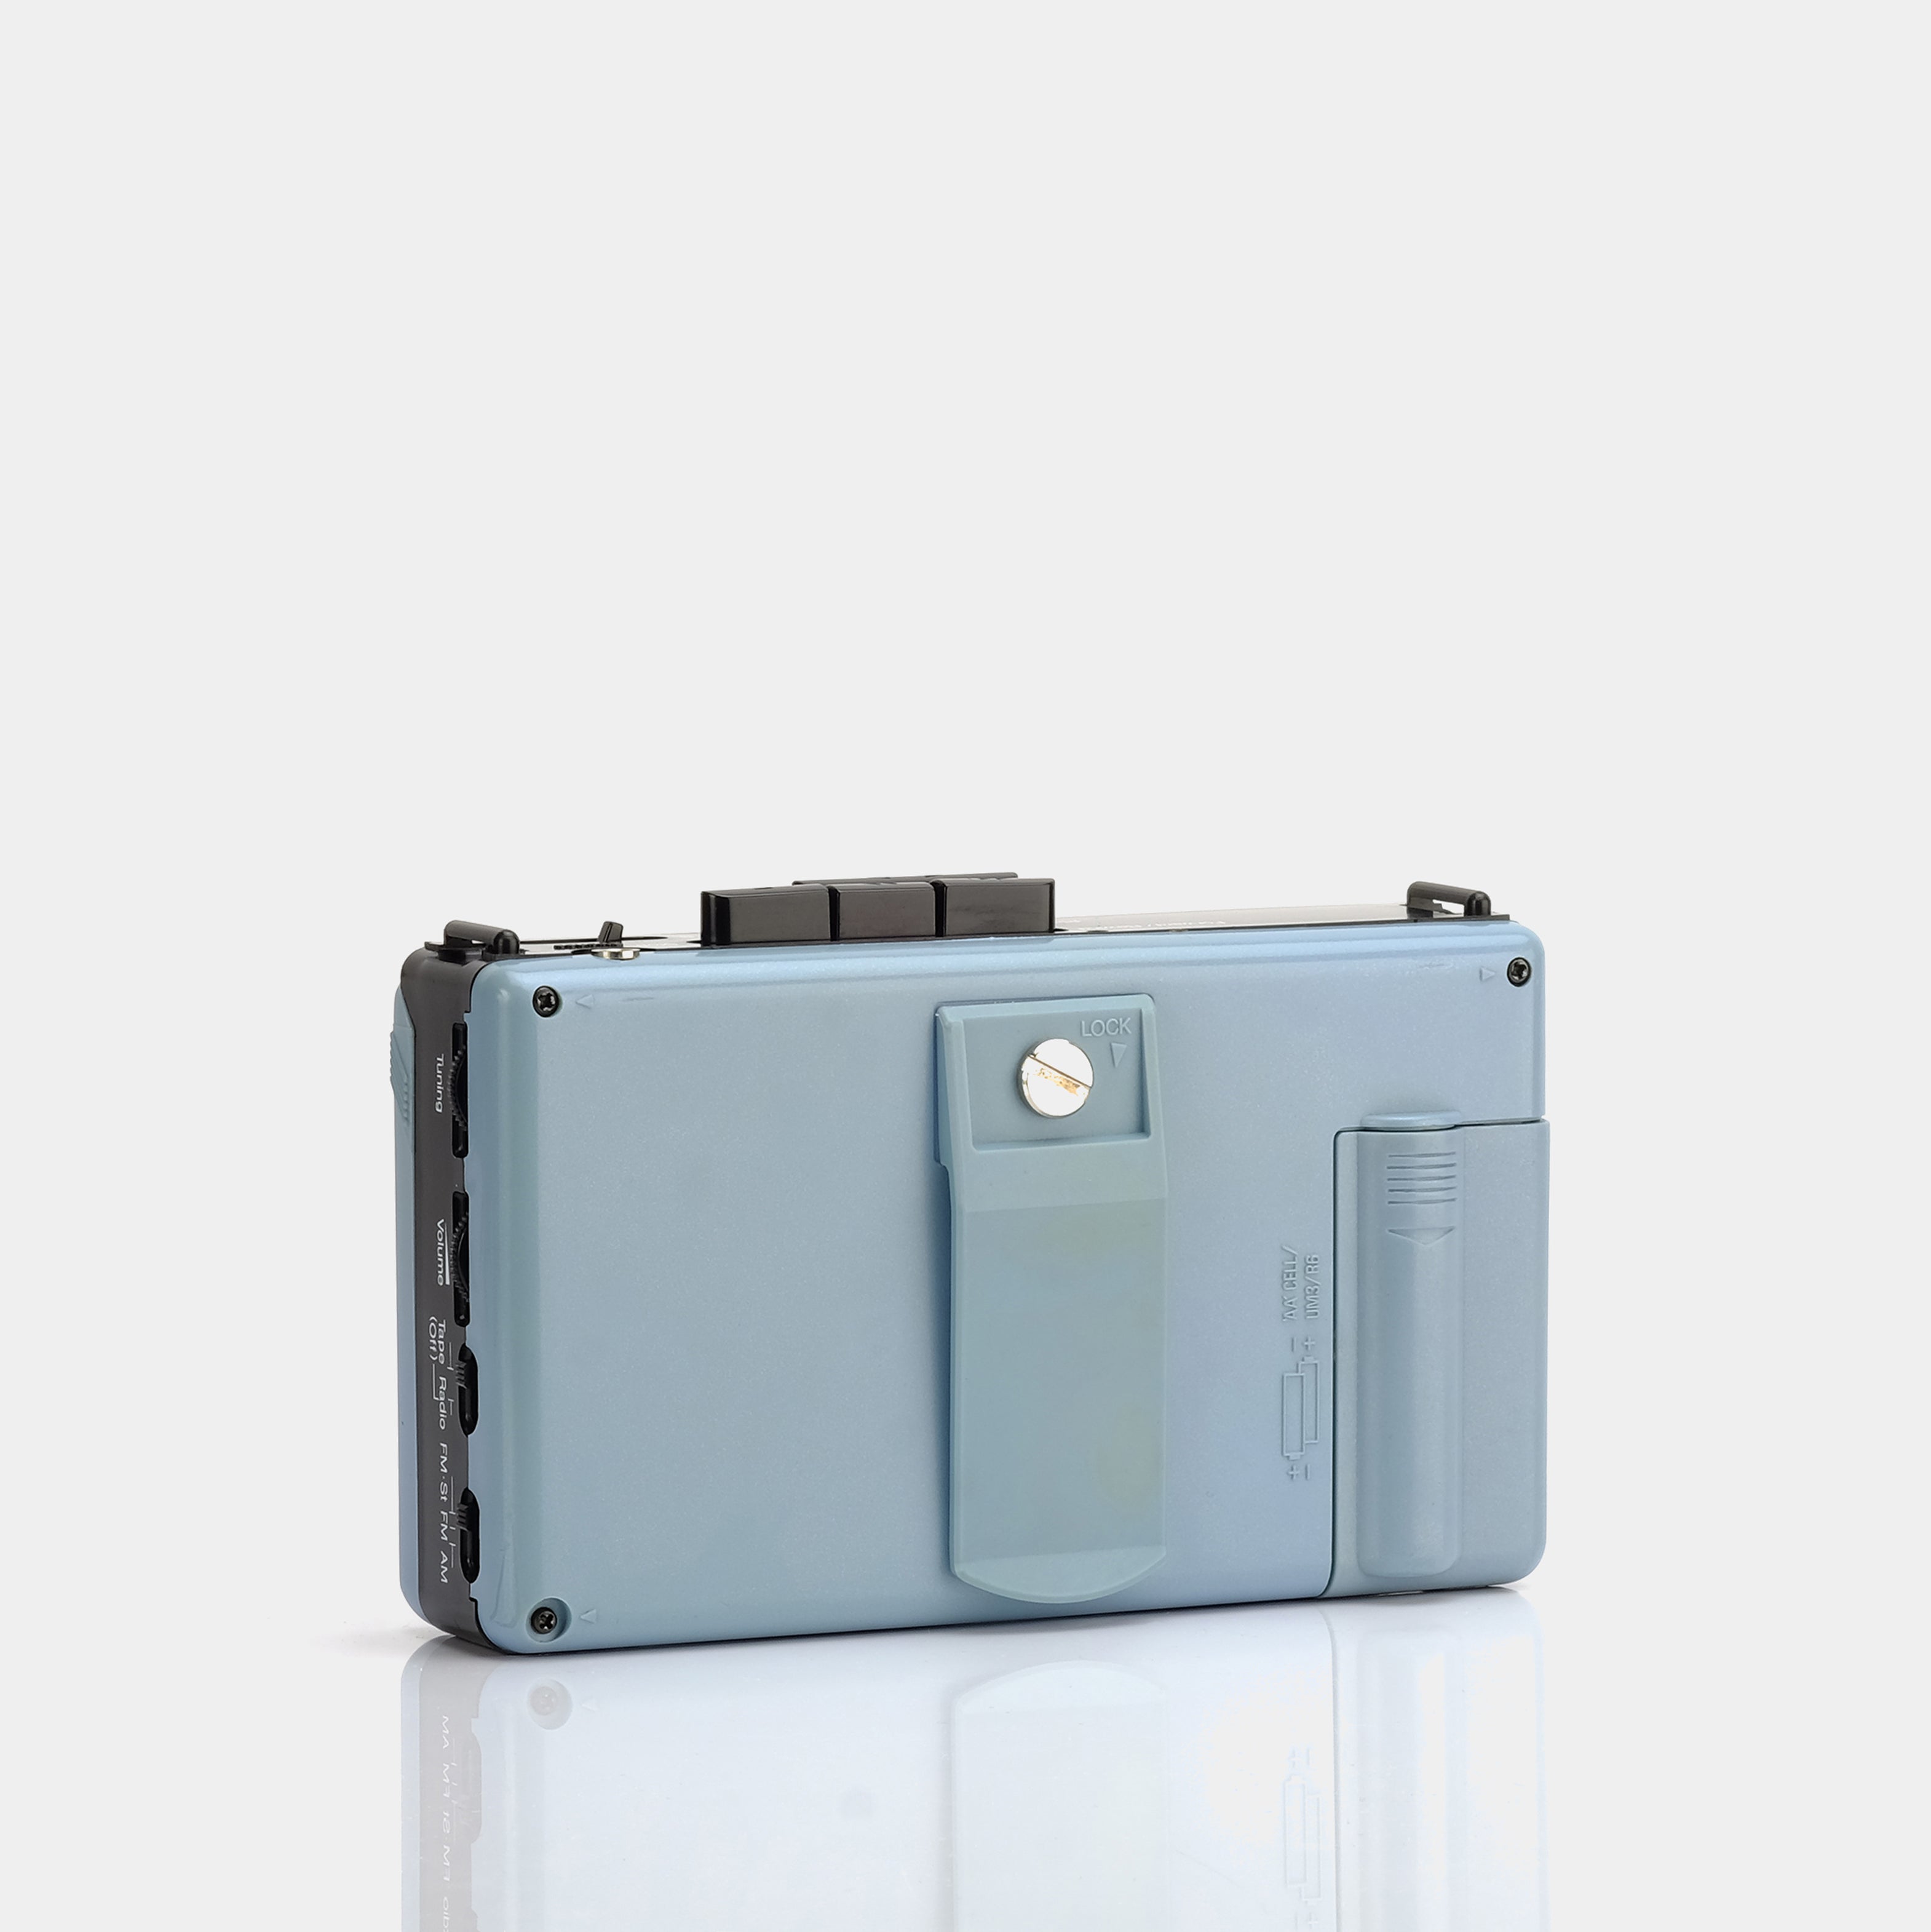 Carrera PX-12 AM/FM Portable Cassette Player